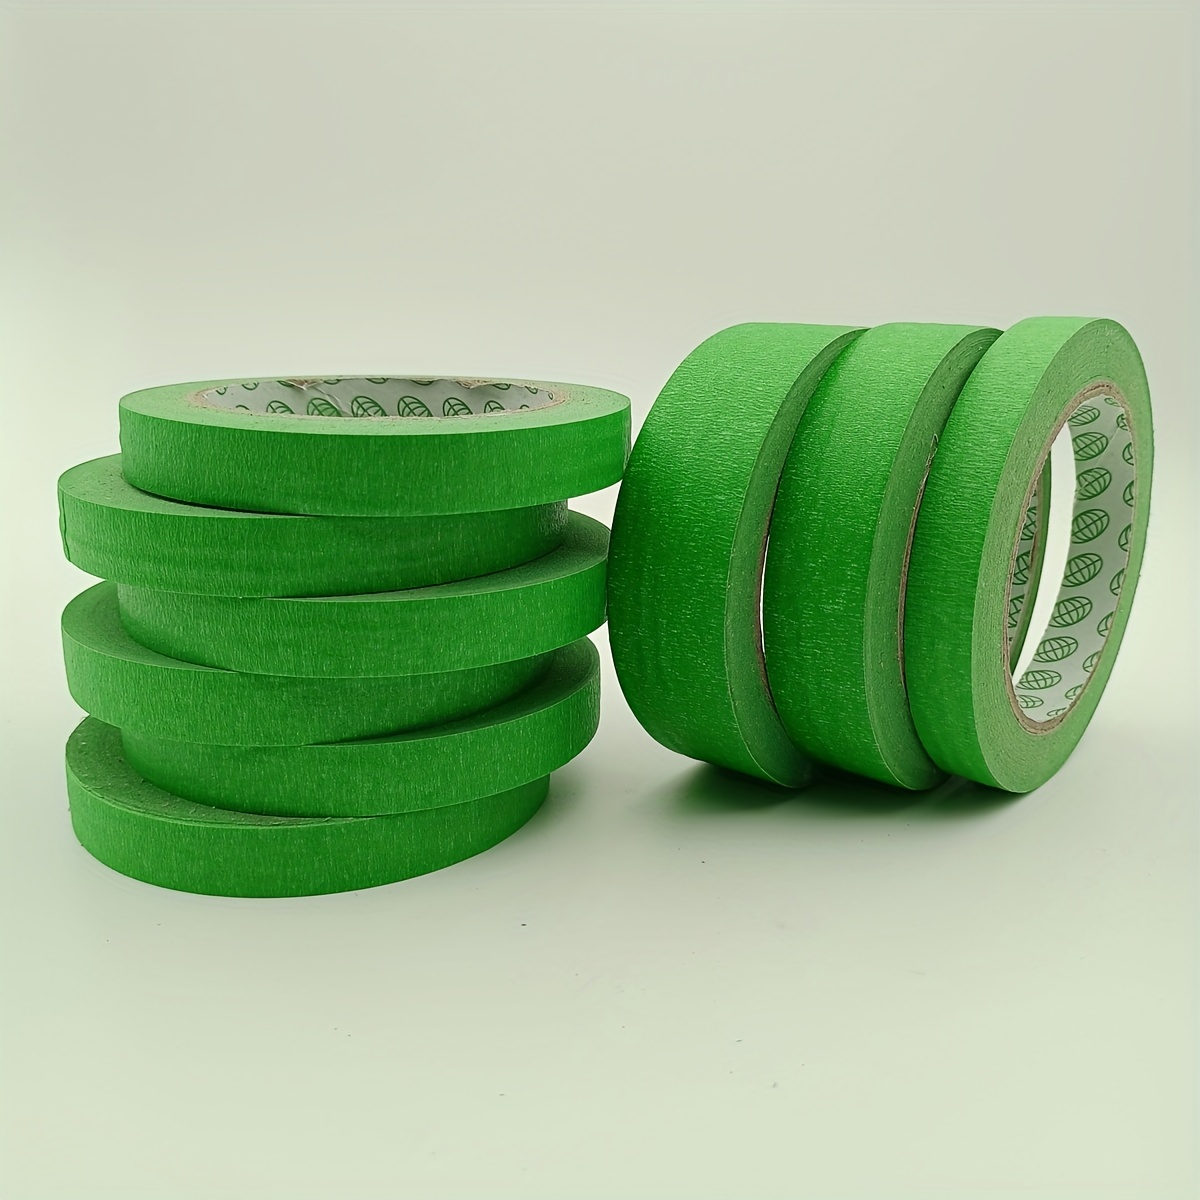 Bulk Tape Green Washi Tape Multi surface Paint Tape 3.0cm - Temu